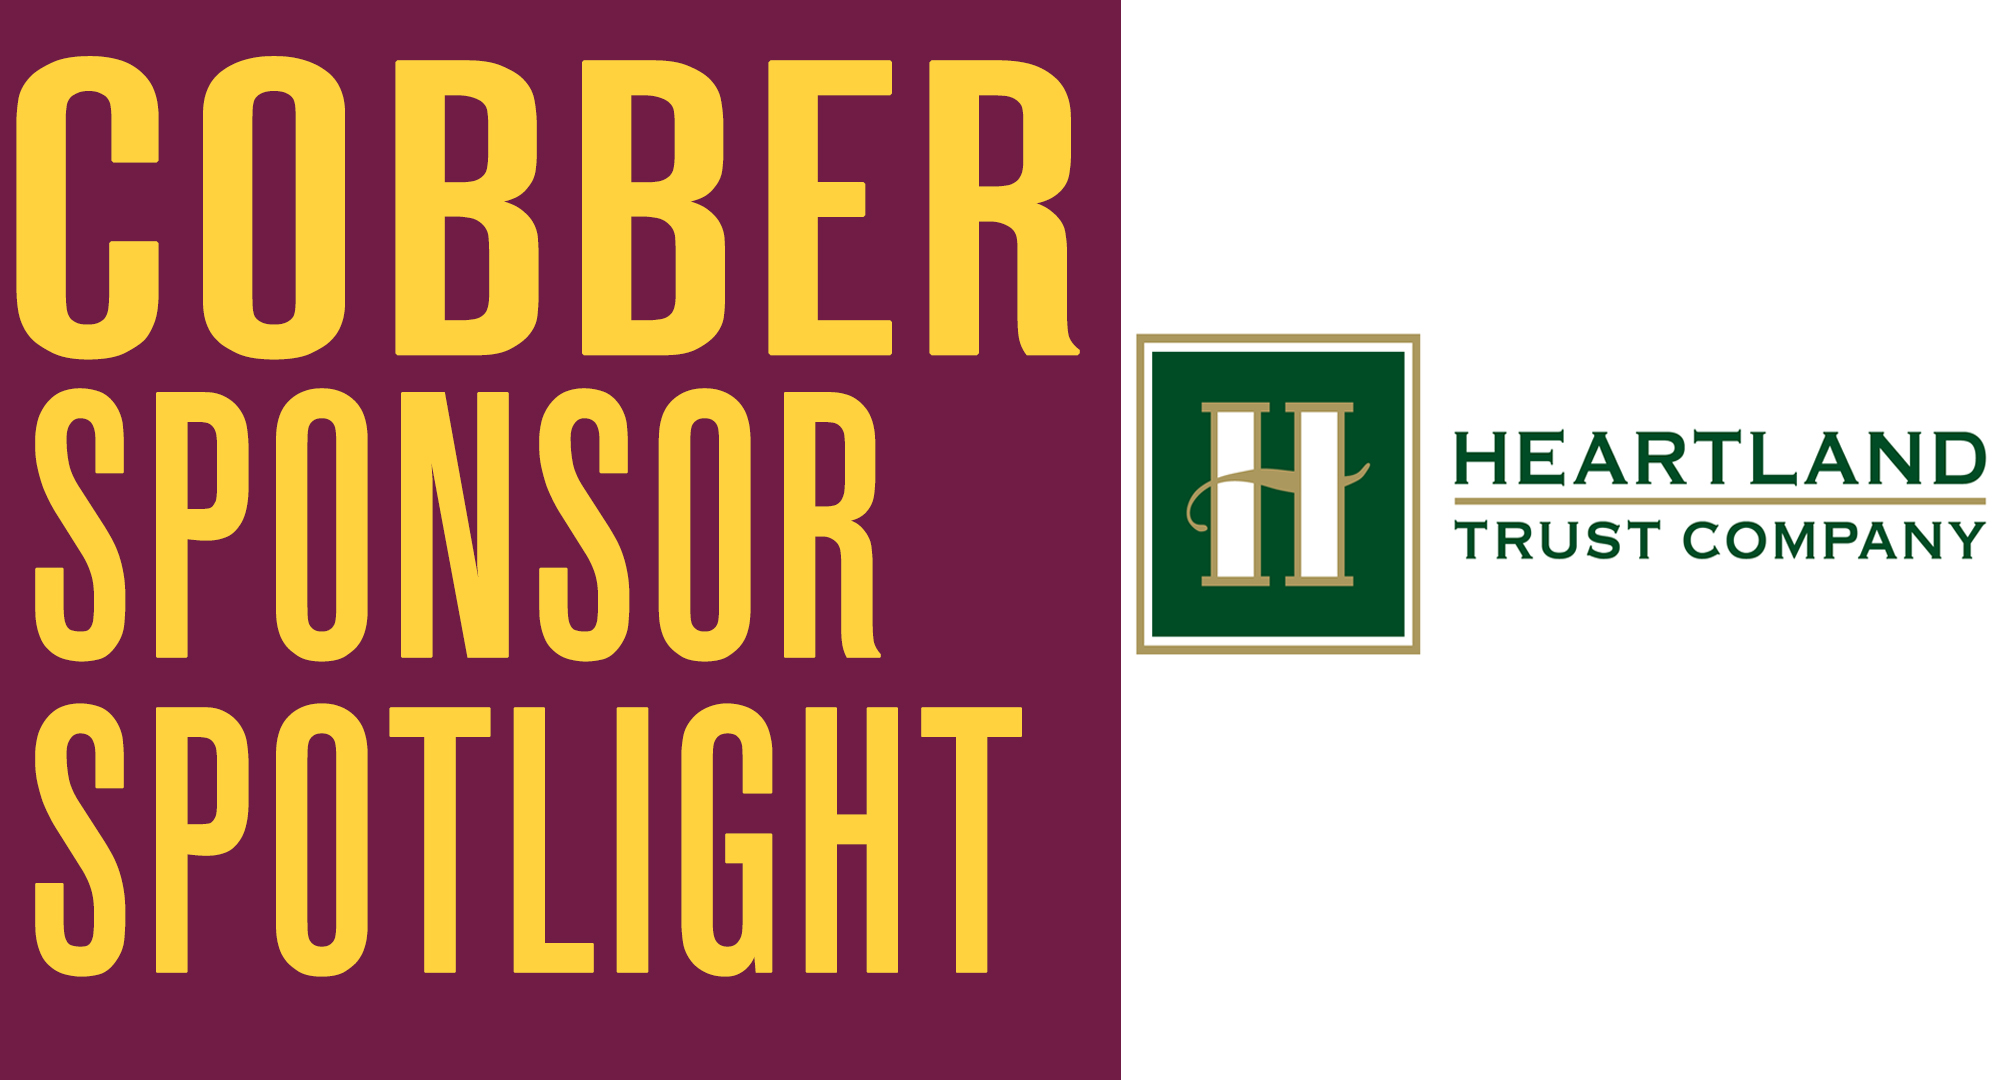 Cobber Sponsor Spotlight - Heartland Trust